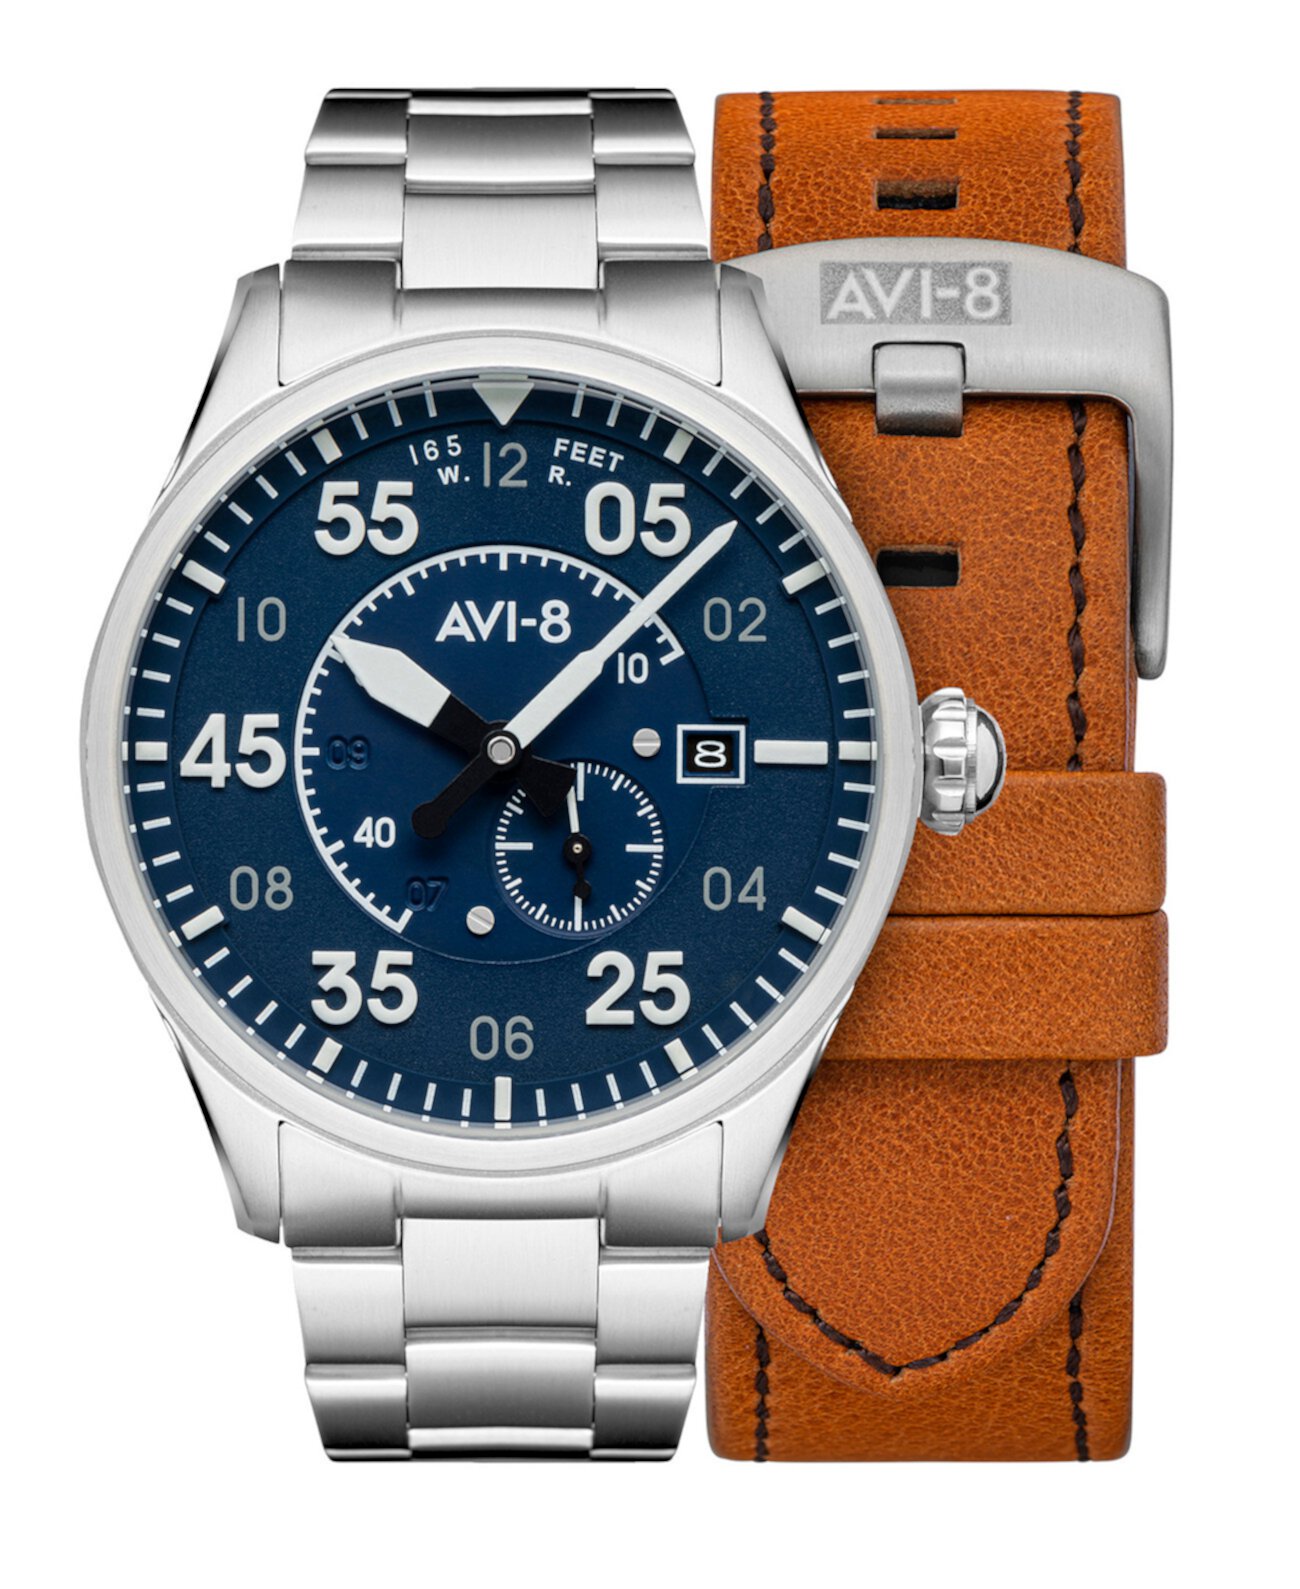 Мужские часы Spitfire с серебристым сплошным браслетом из нержавеющей стали и коричневым ремешком из натуральной кожи, 42 мм AVI-8